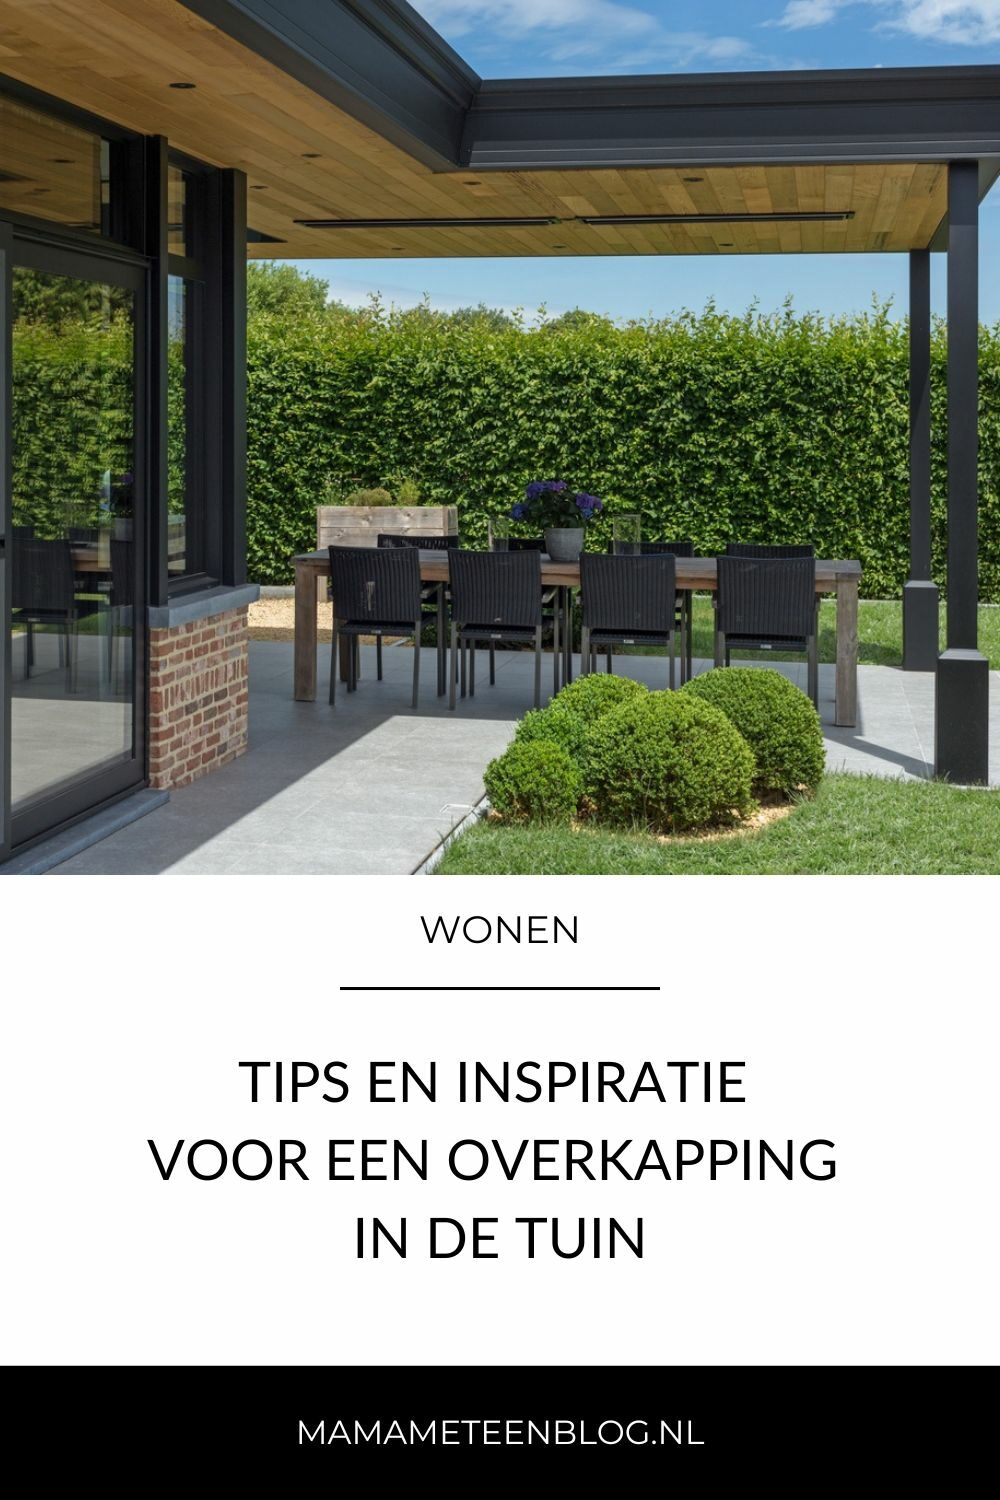 Tips en inspiratie voor een overkapping of veranda in de tuin mamameteenblog.nl (1)